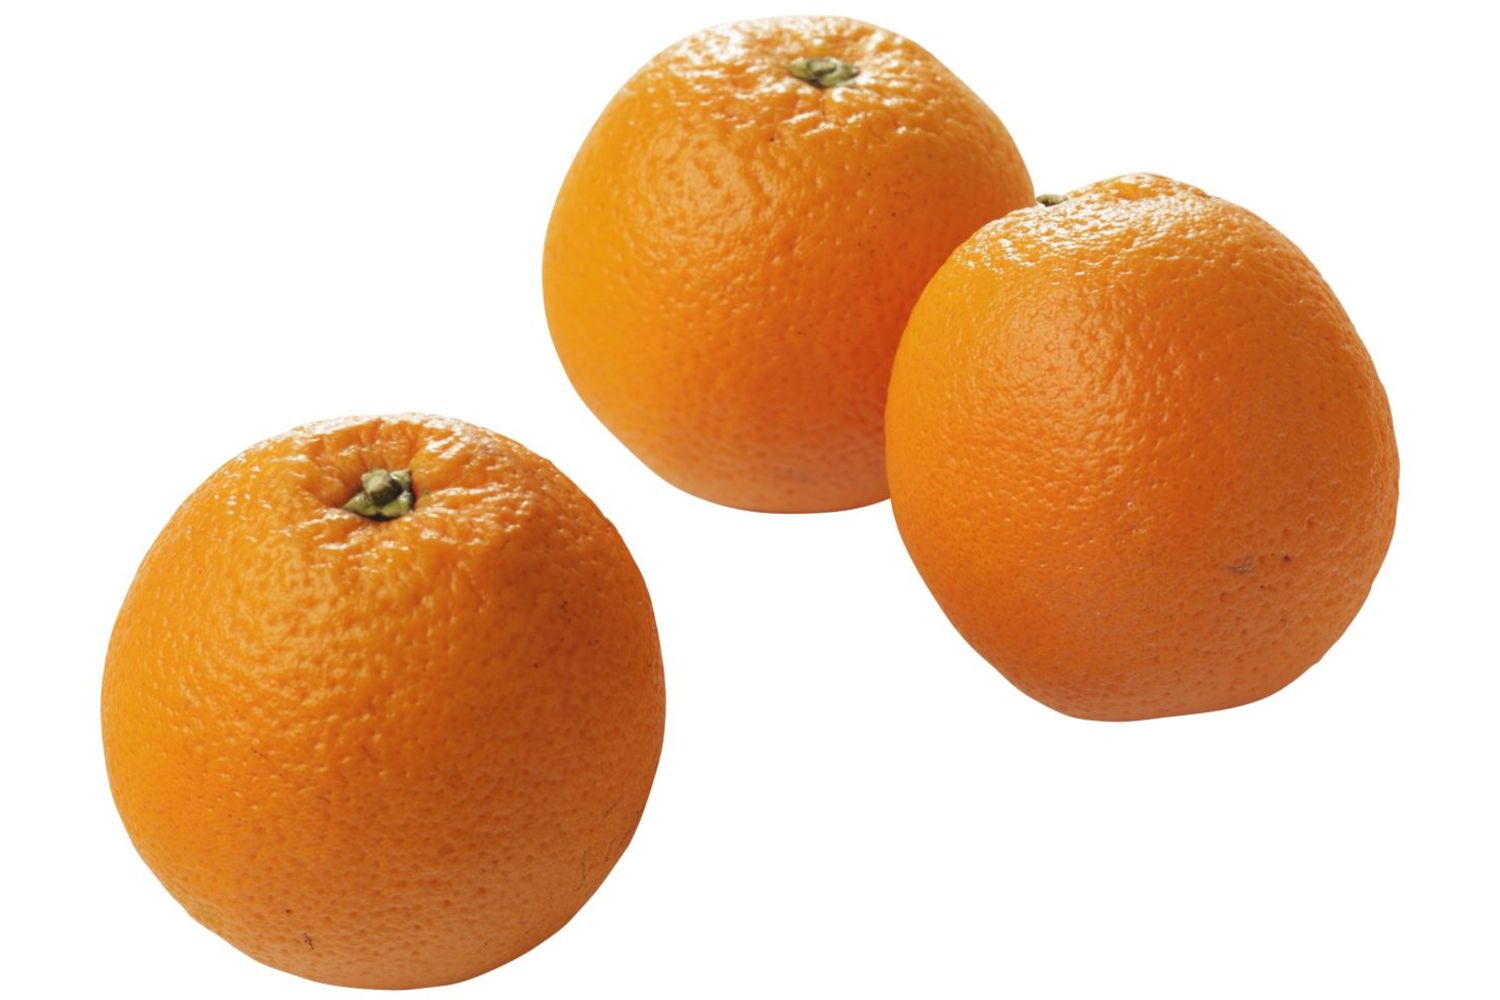 Perssinaasappel klein 64-73mm kist 15 kilogram 1